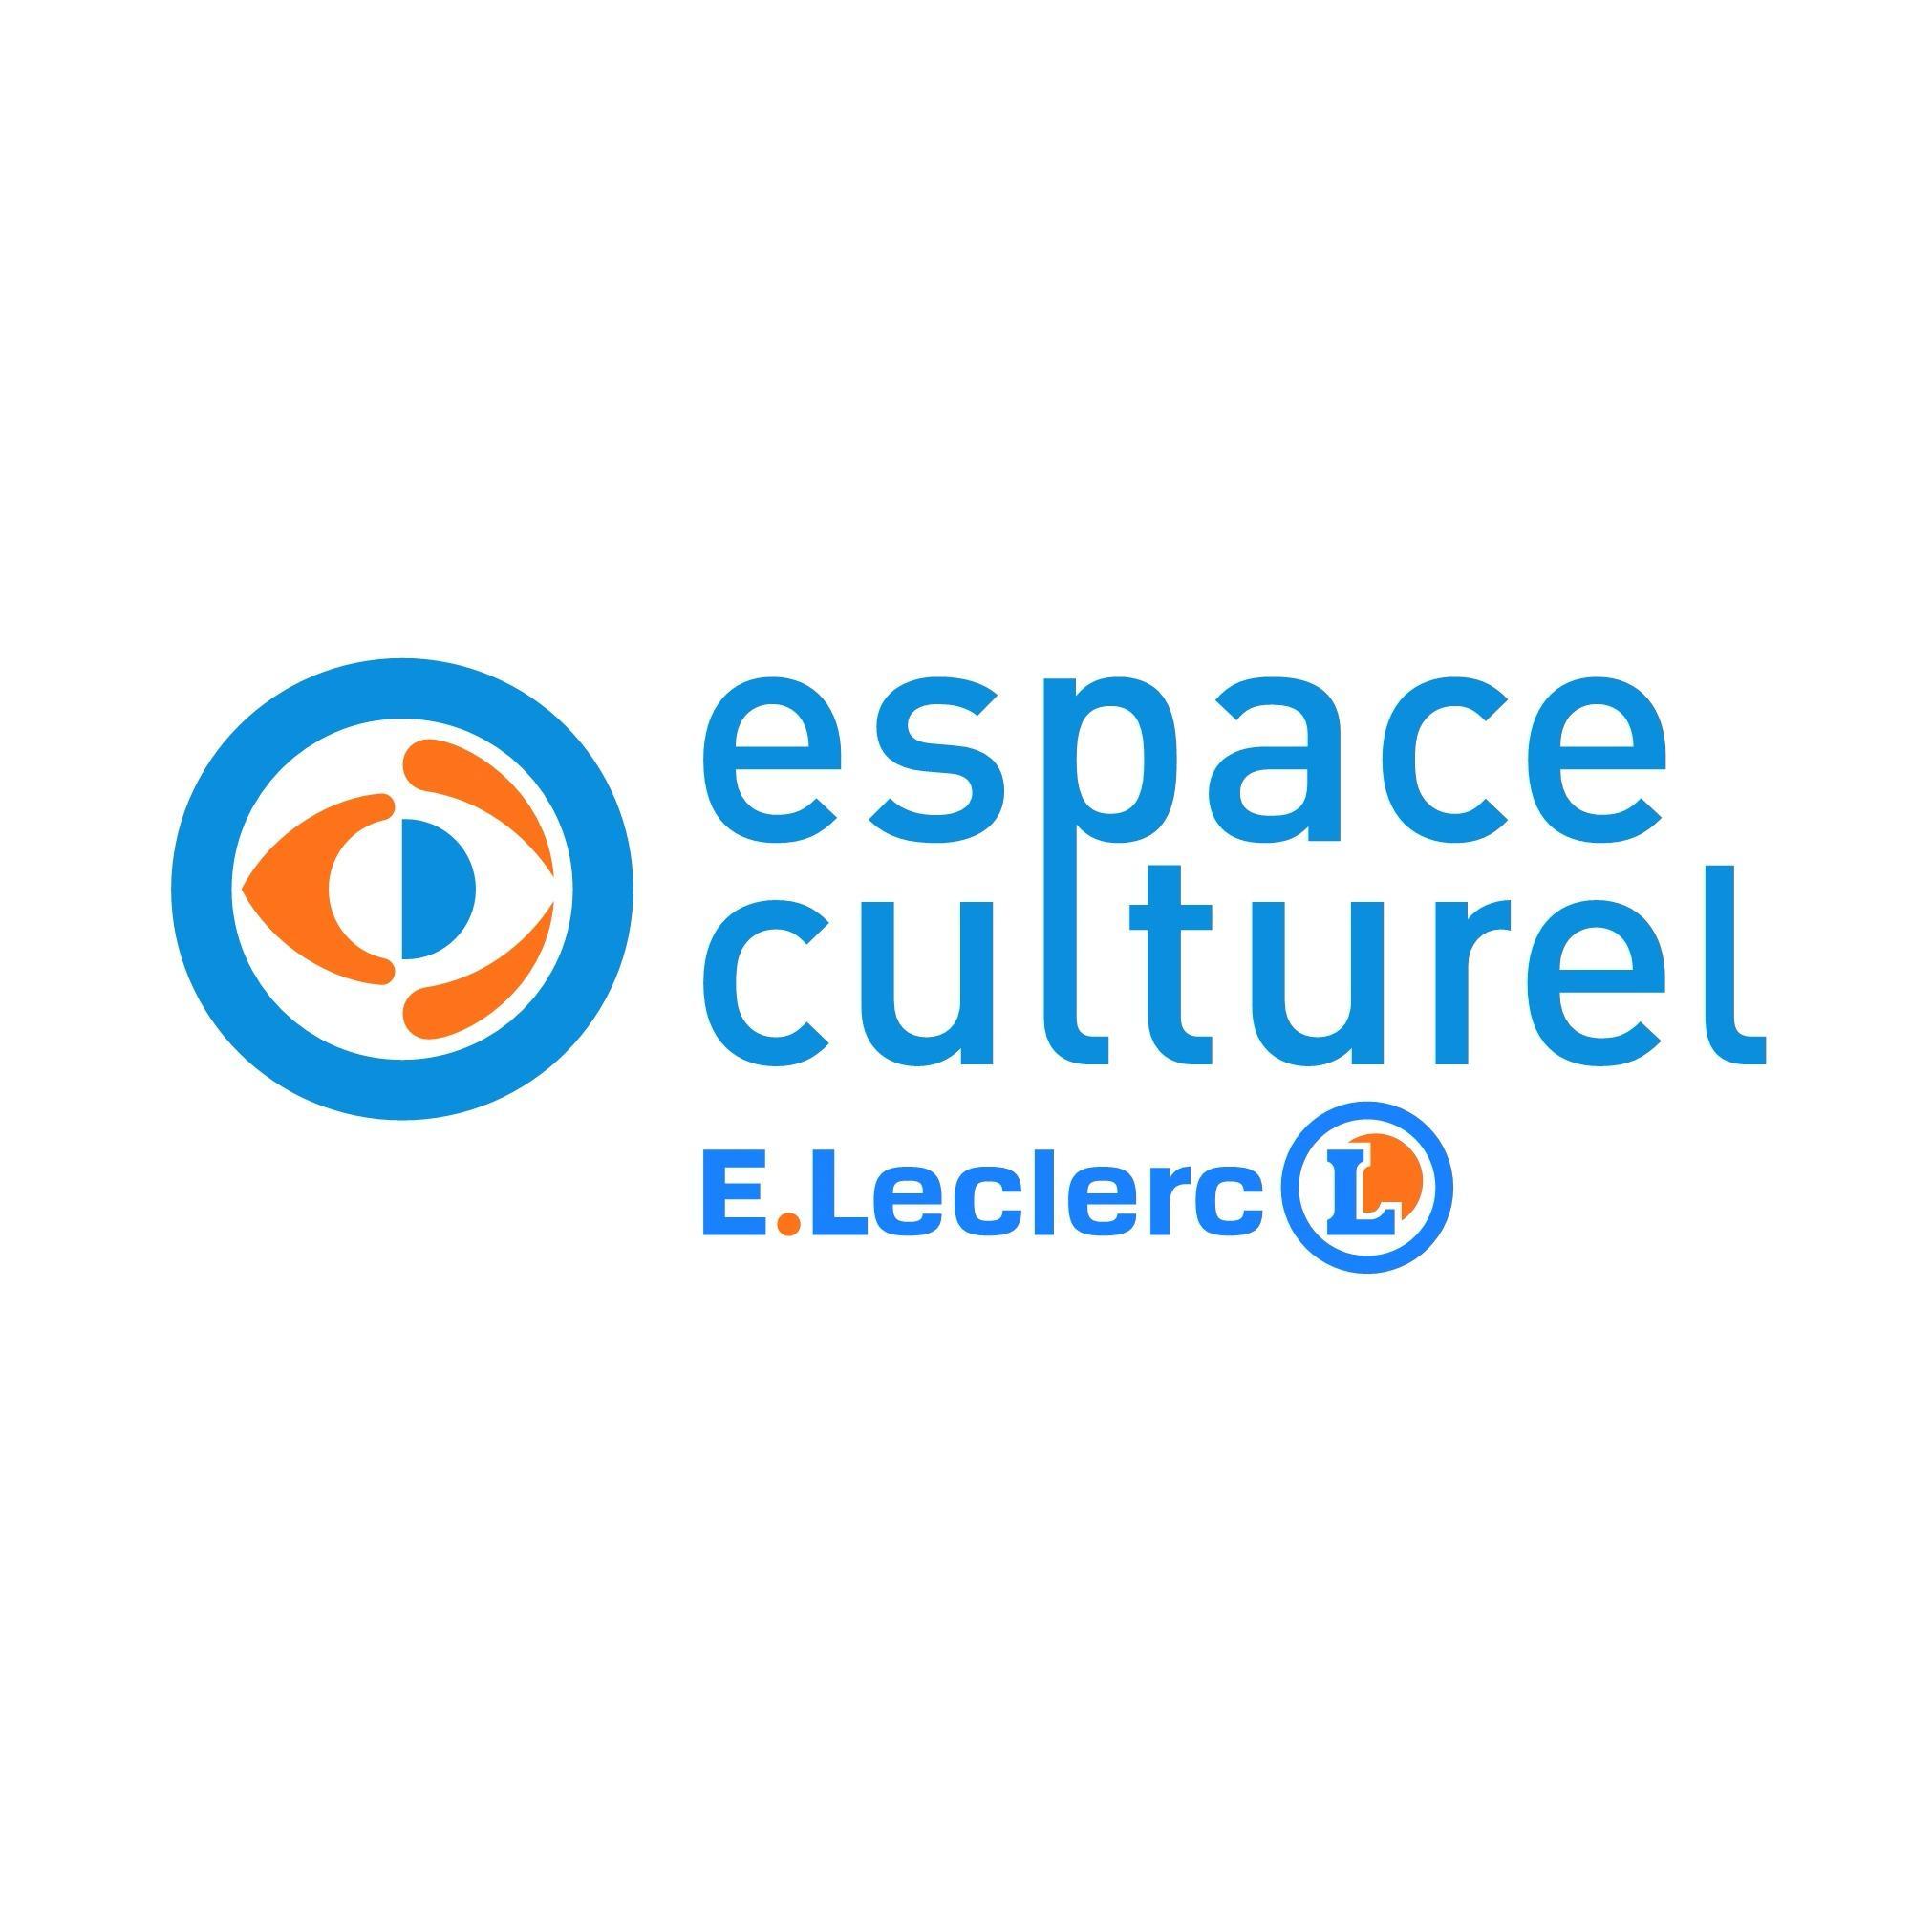 E.leclerc Espace Culturel Saint Louis